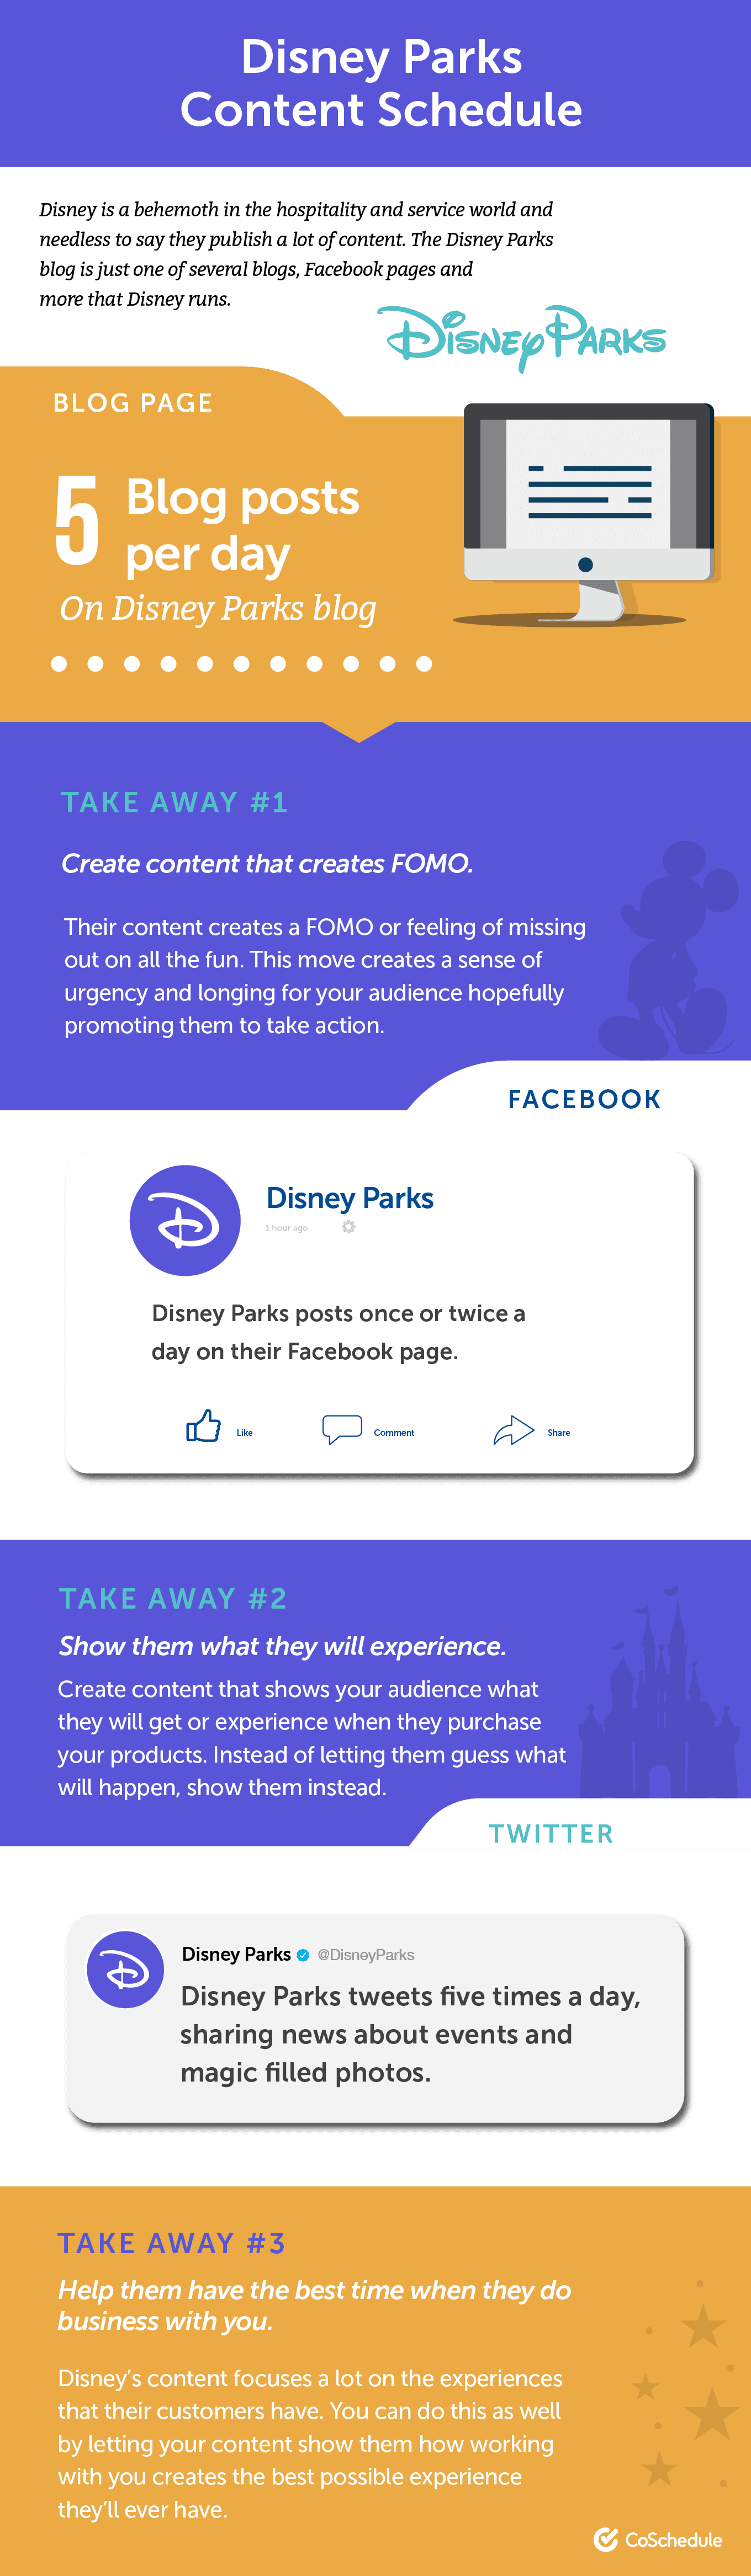 Disney Parks content schema